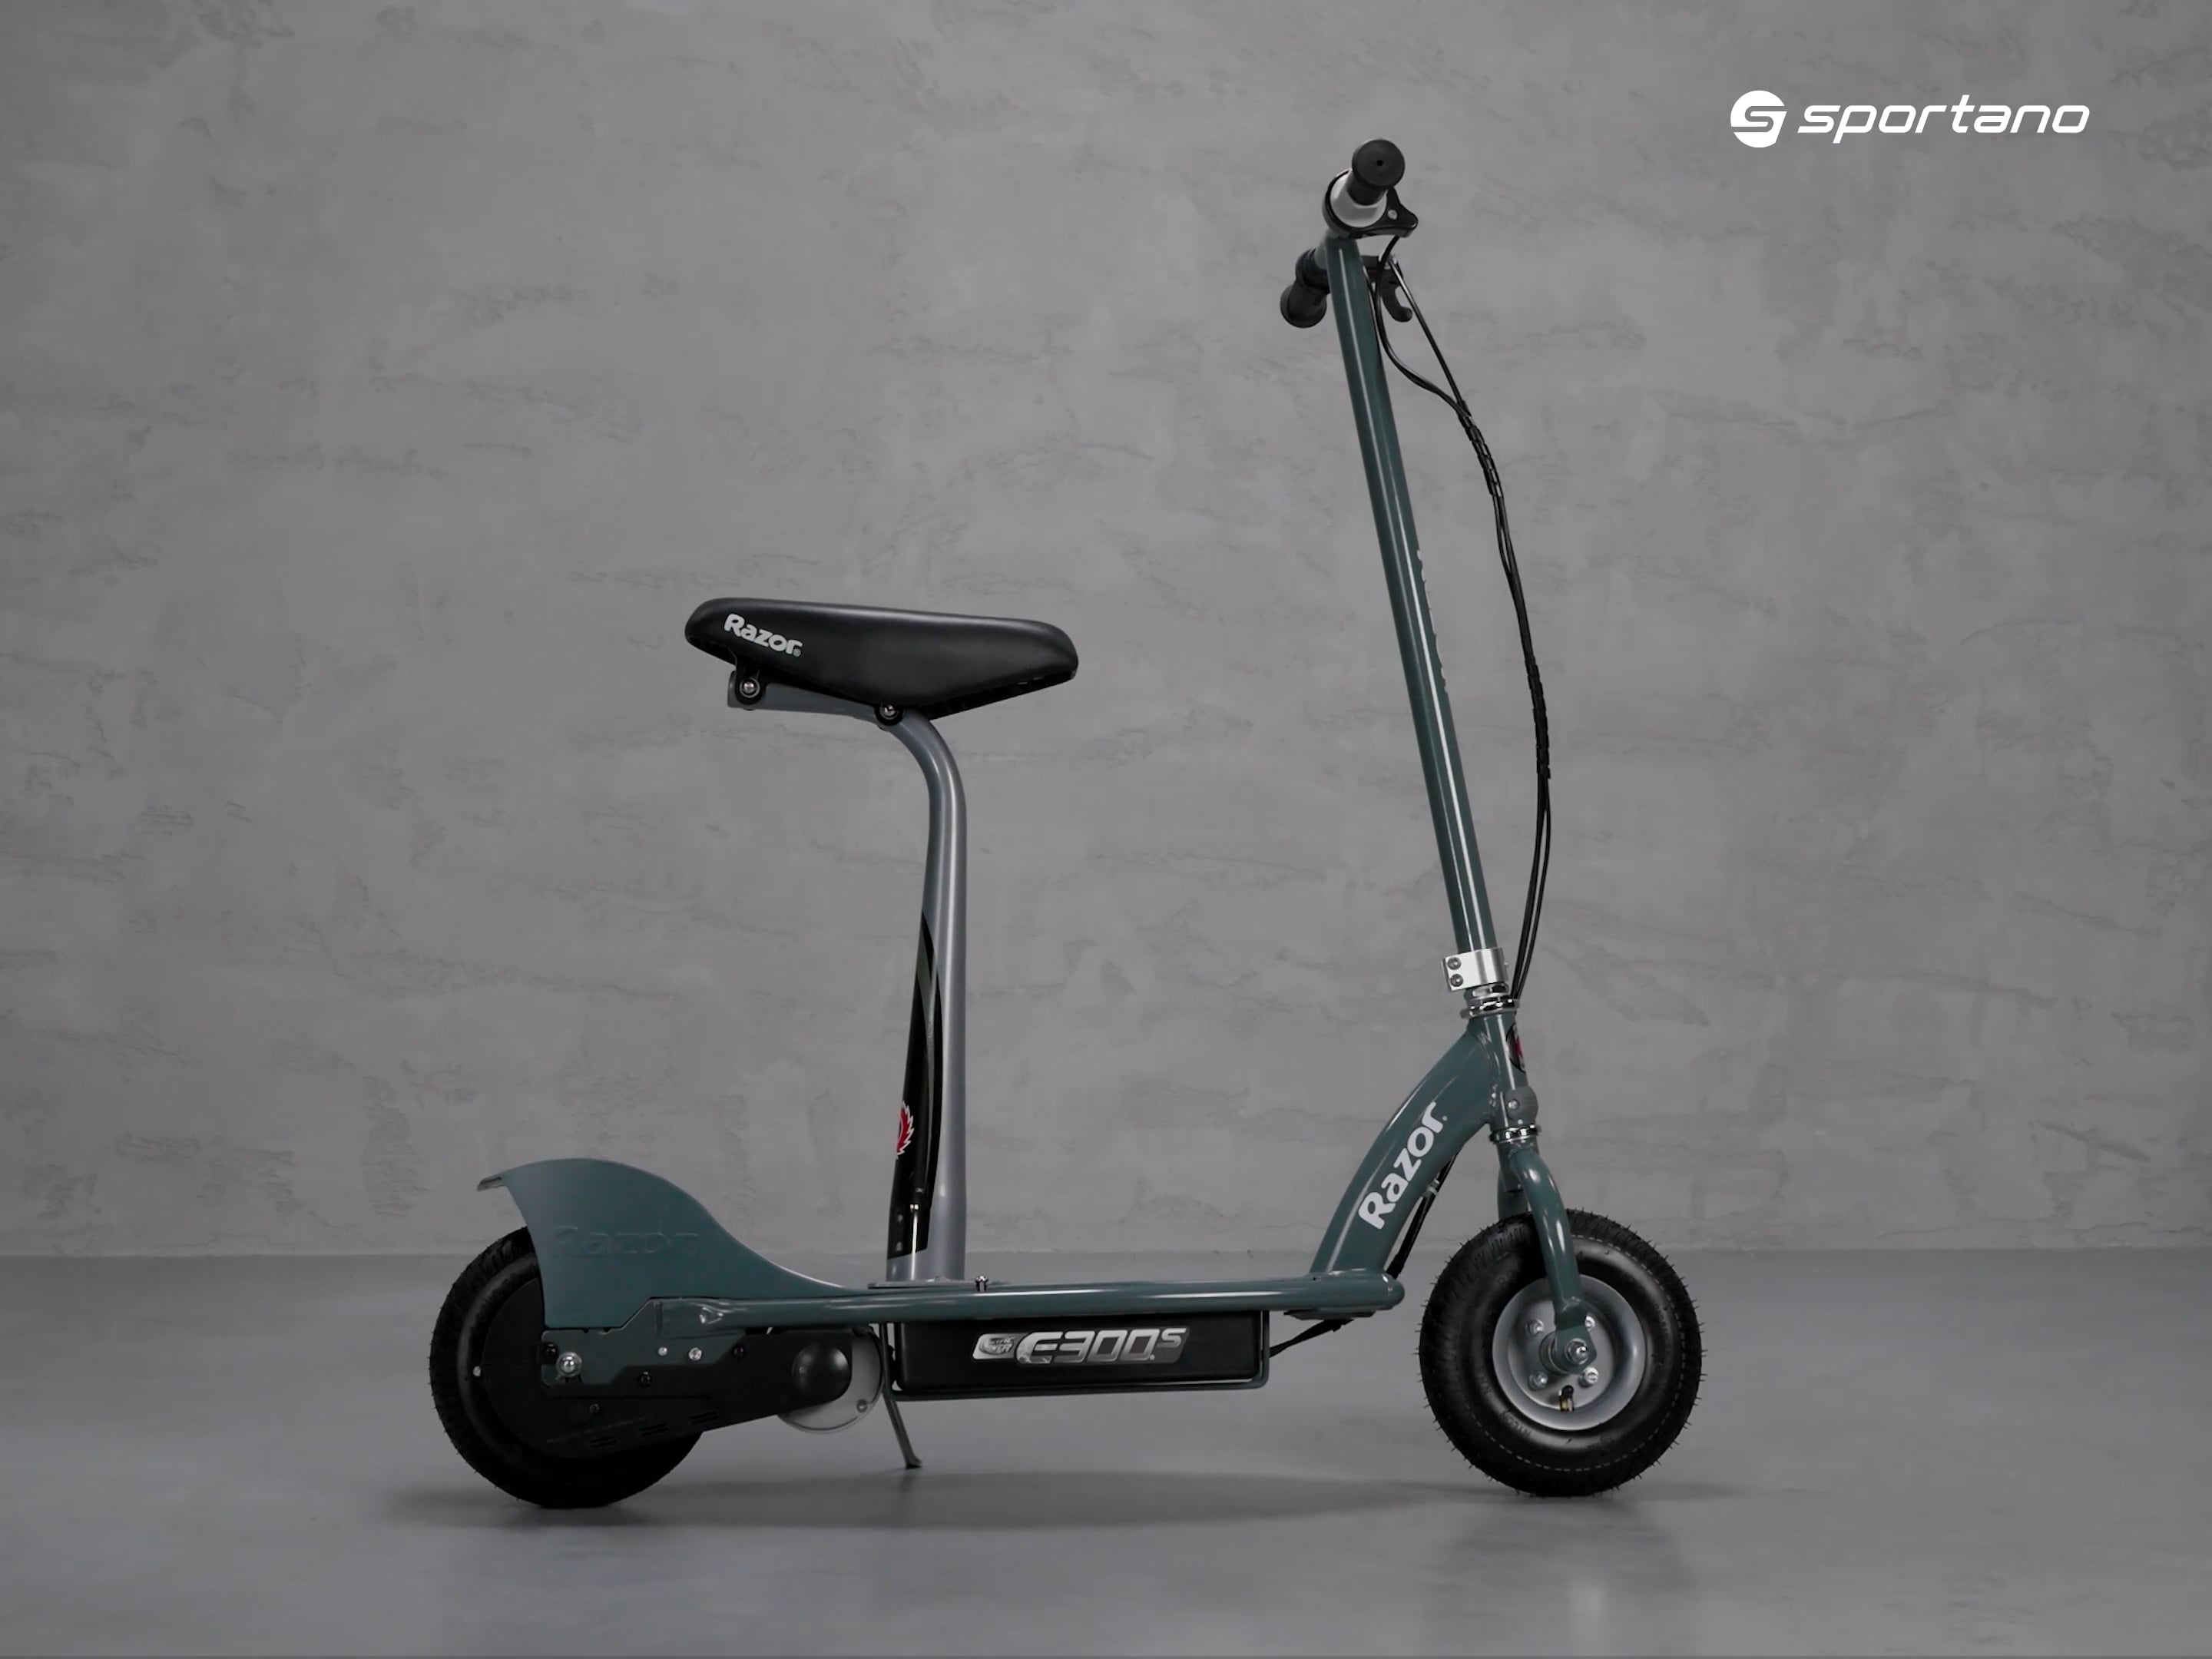 Razor E300S children's electric scooter grey 13173815